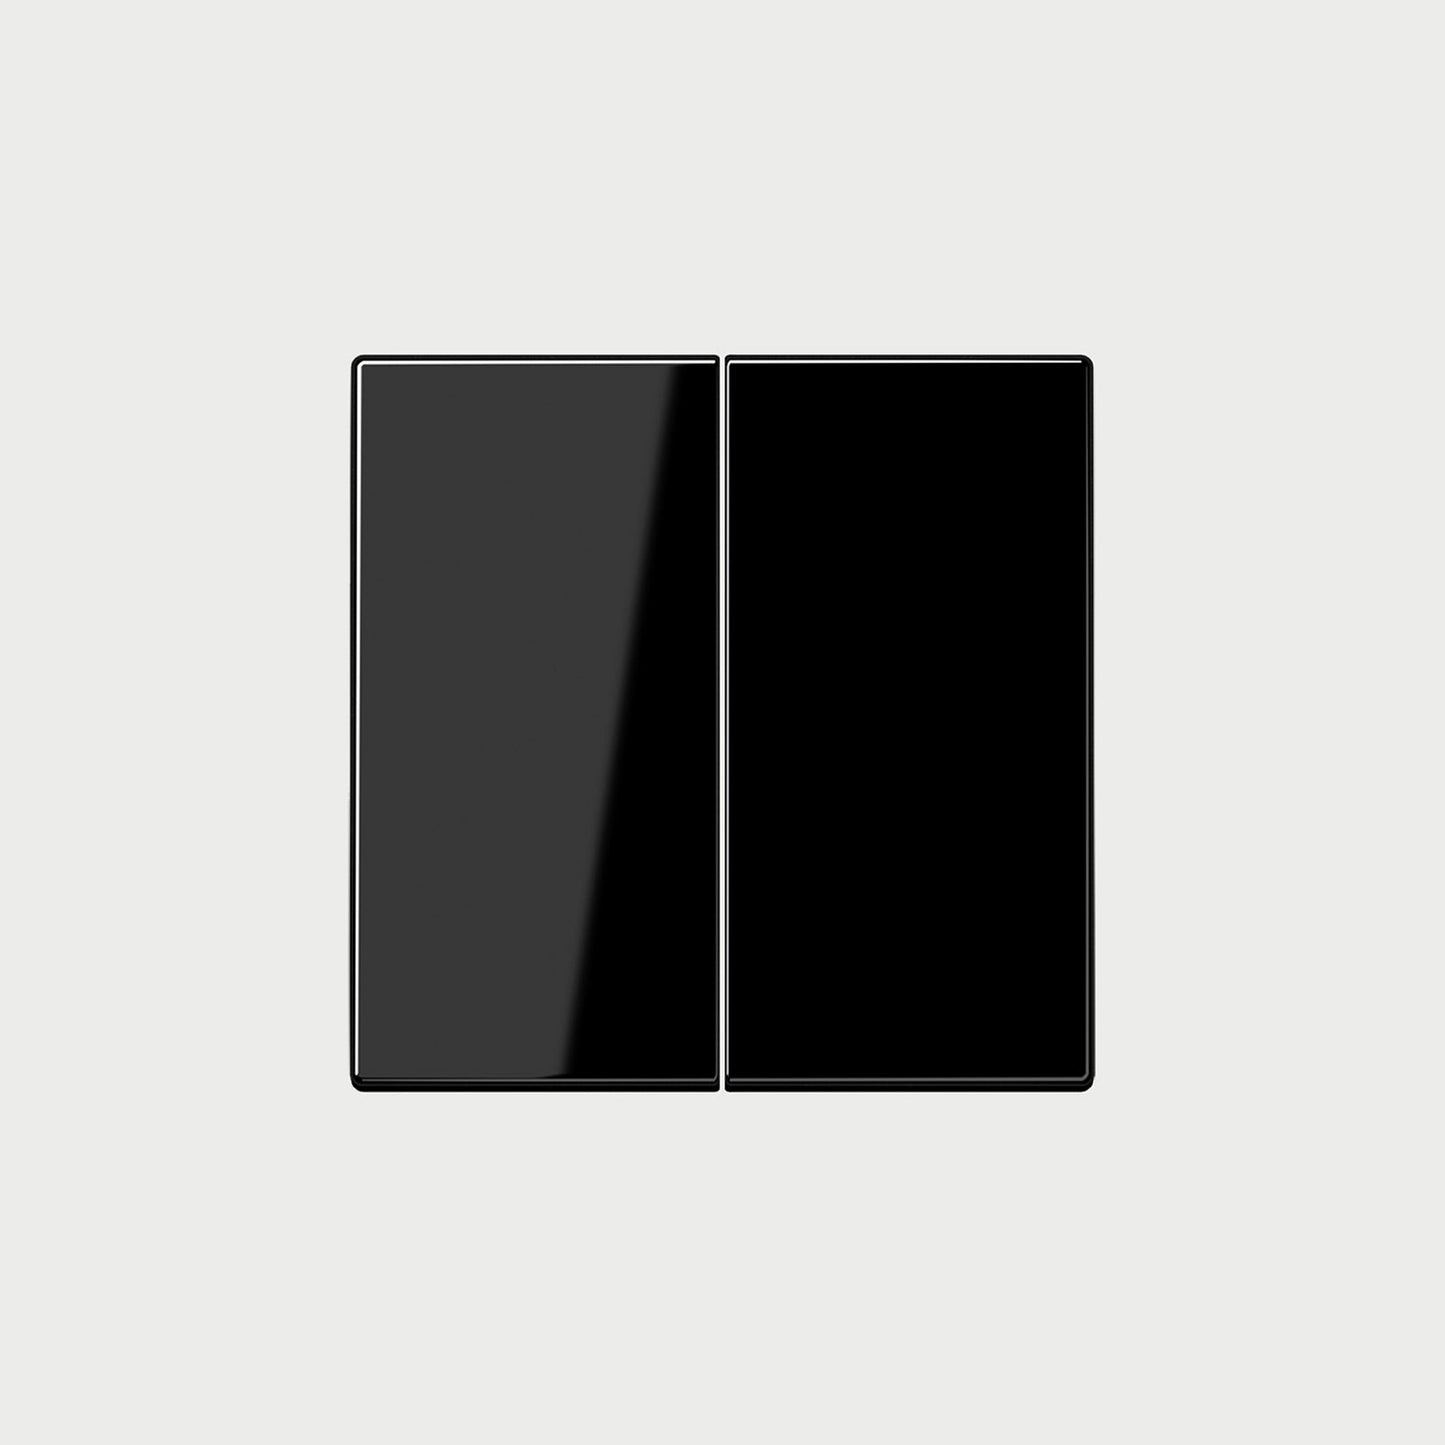 Ls995 (Plastic) Black Cover